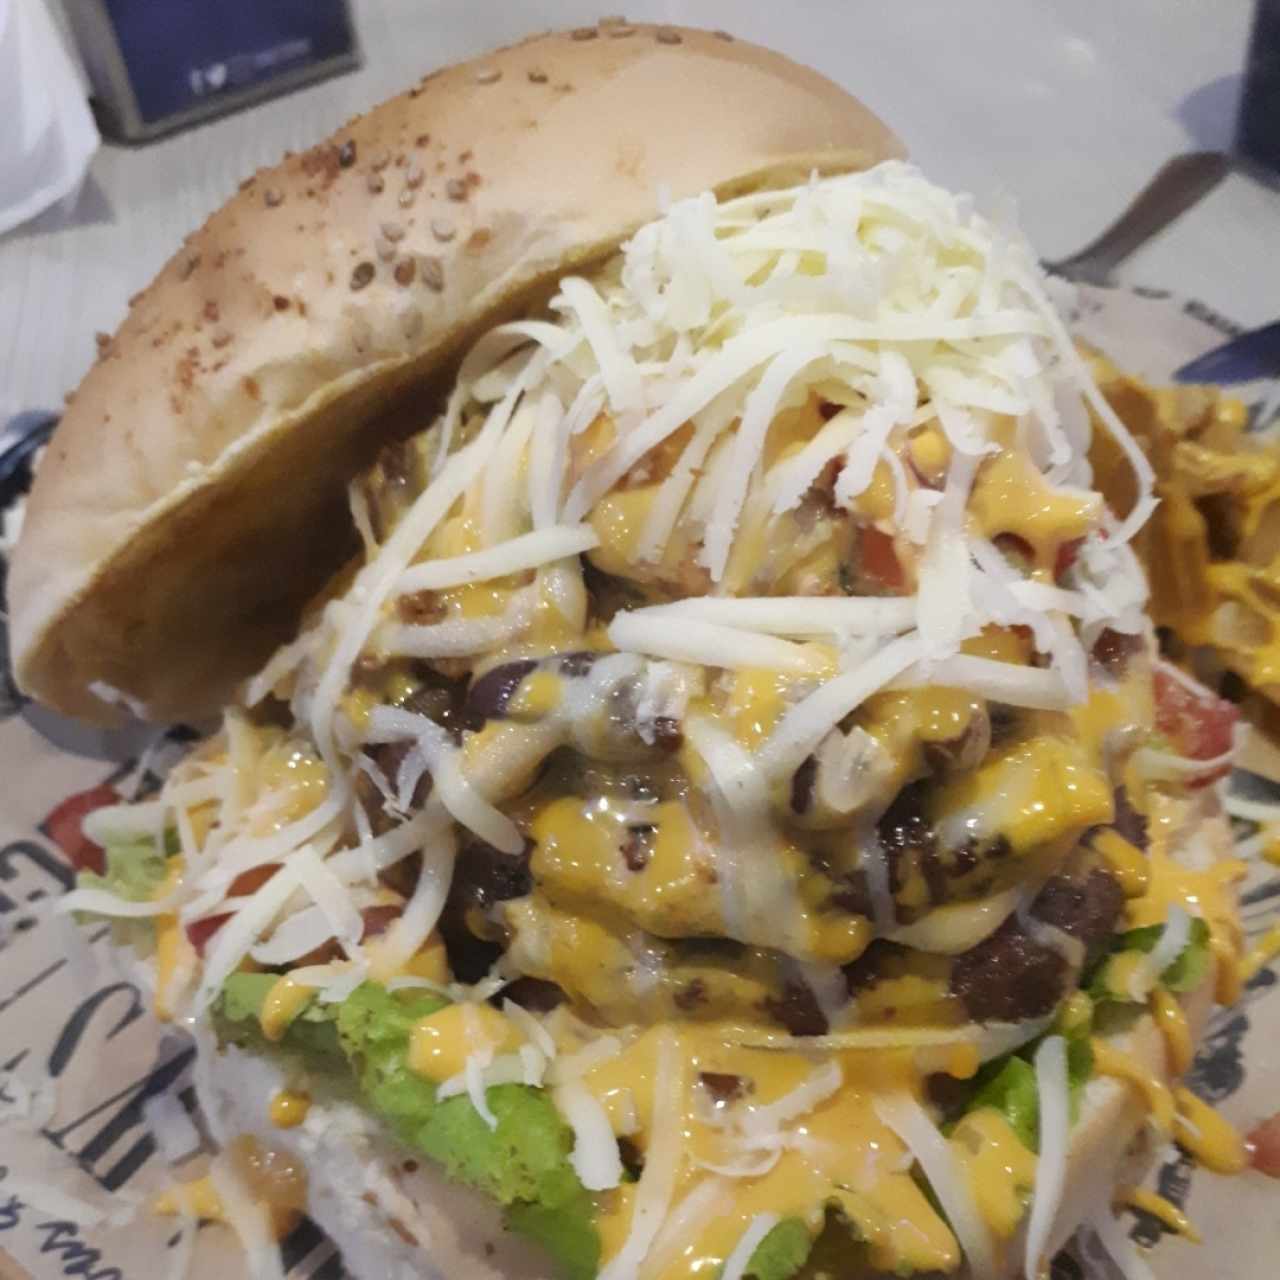 Cheesebacon Burger